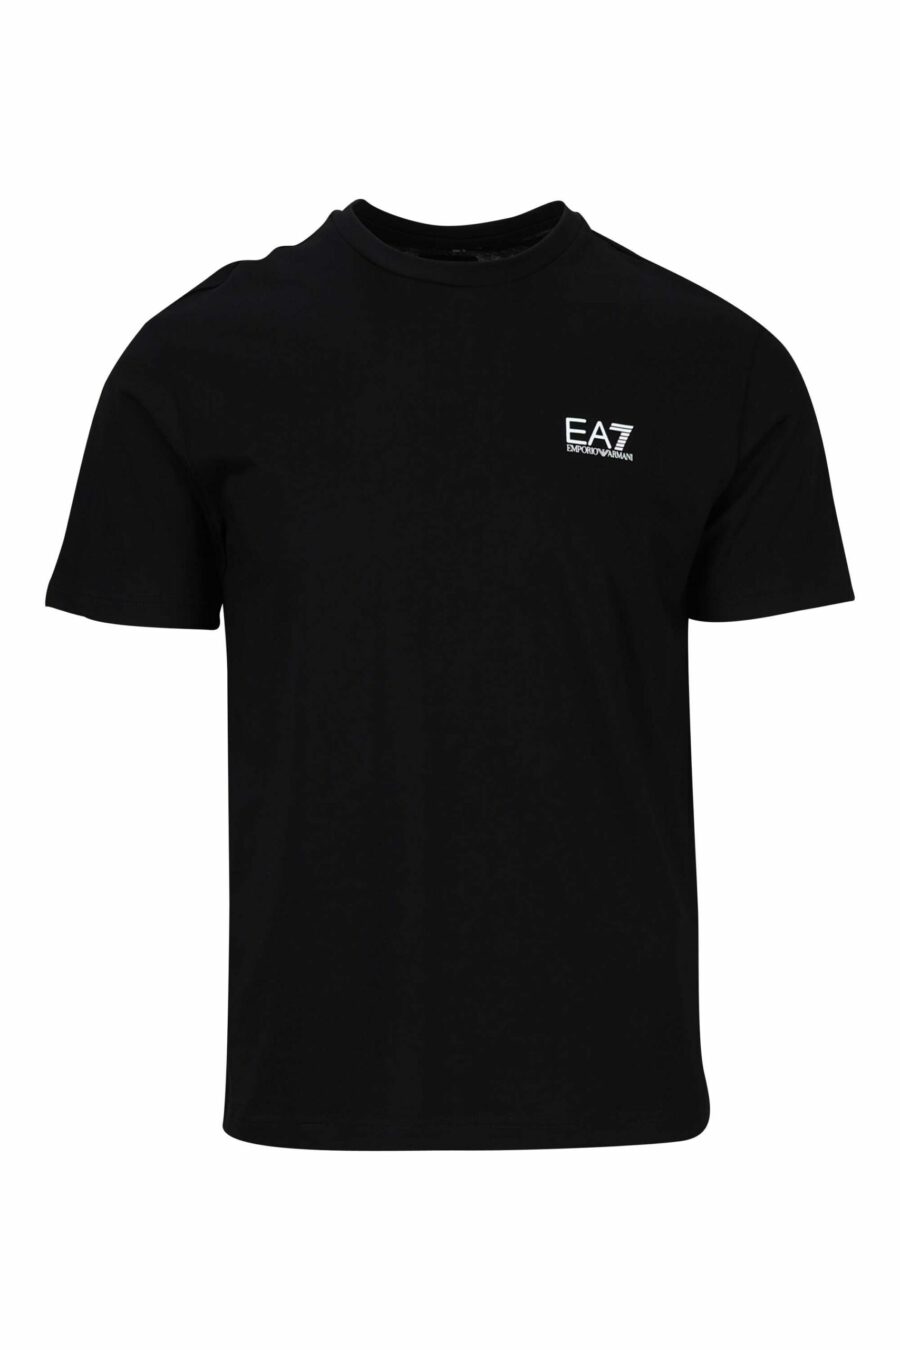 T-shirt noir avec maxilogo vertical "lux identity" au dos - 8058947452668 scaled